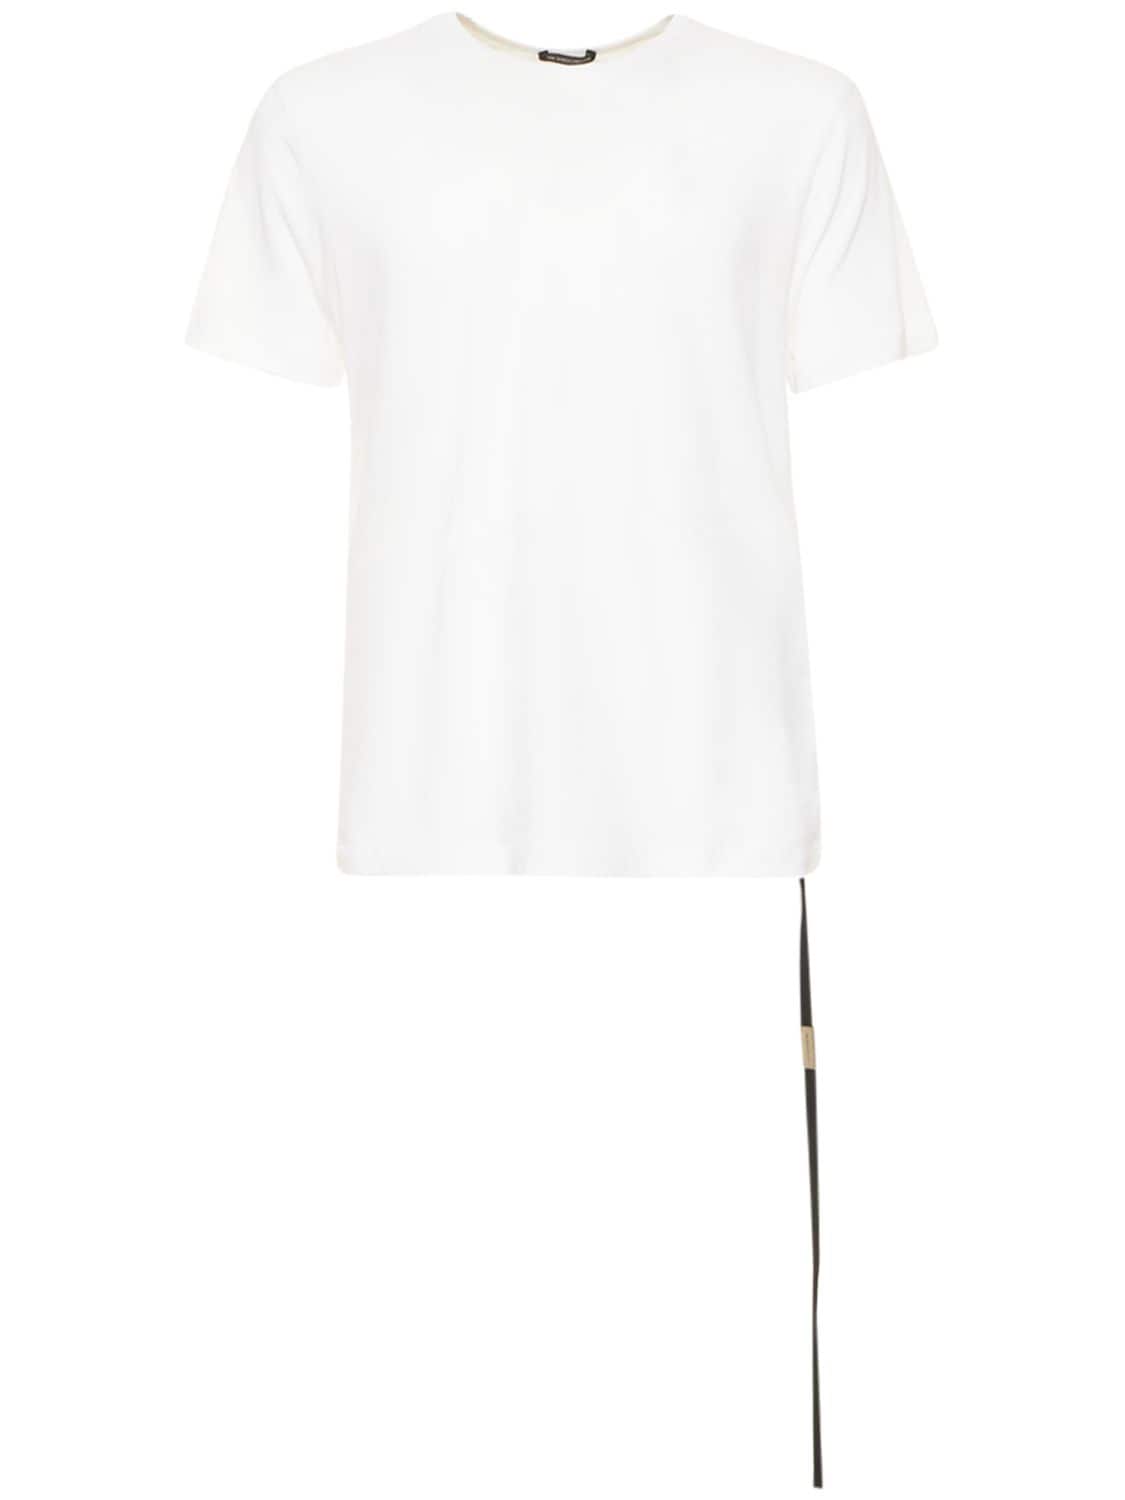 ANN DEMEULEMEESTER Stijn Printed Cotton Jersey T-shirt